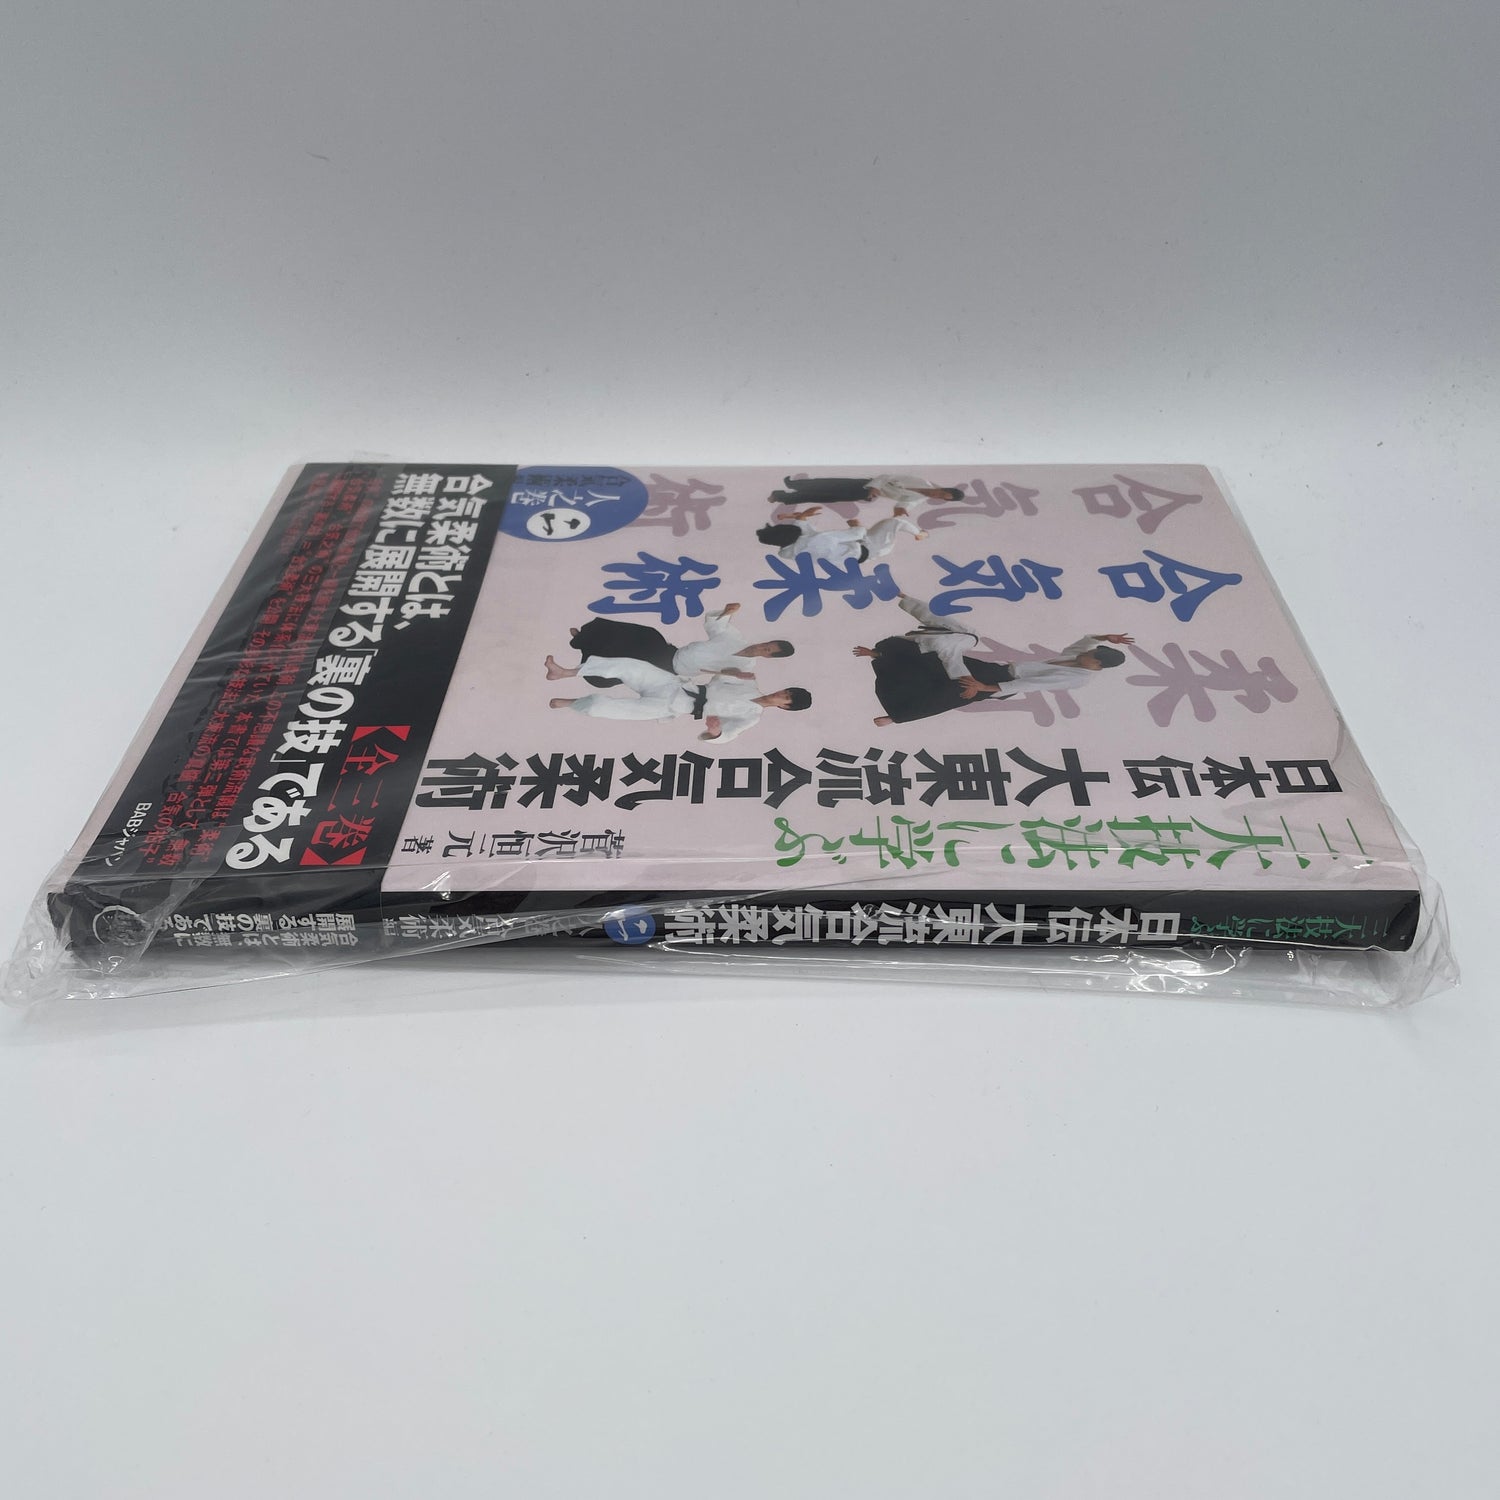 日本伝大東流合気柔術 Book 2: 合気柔術 菅沢高玄著 (中古品) 